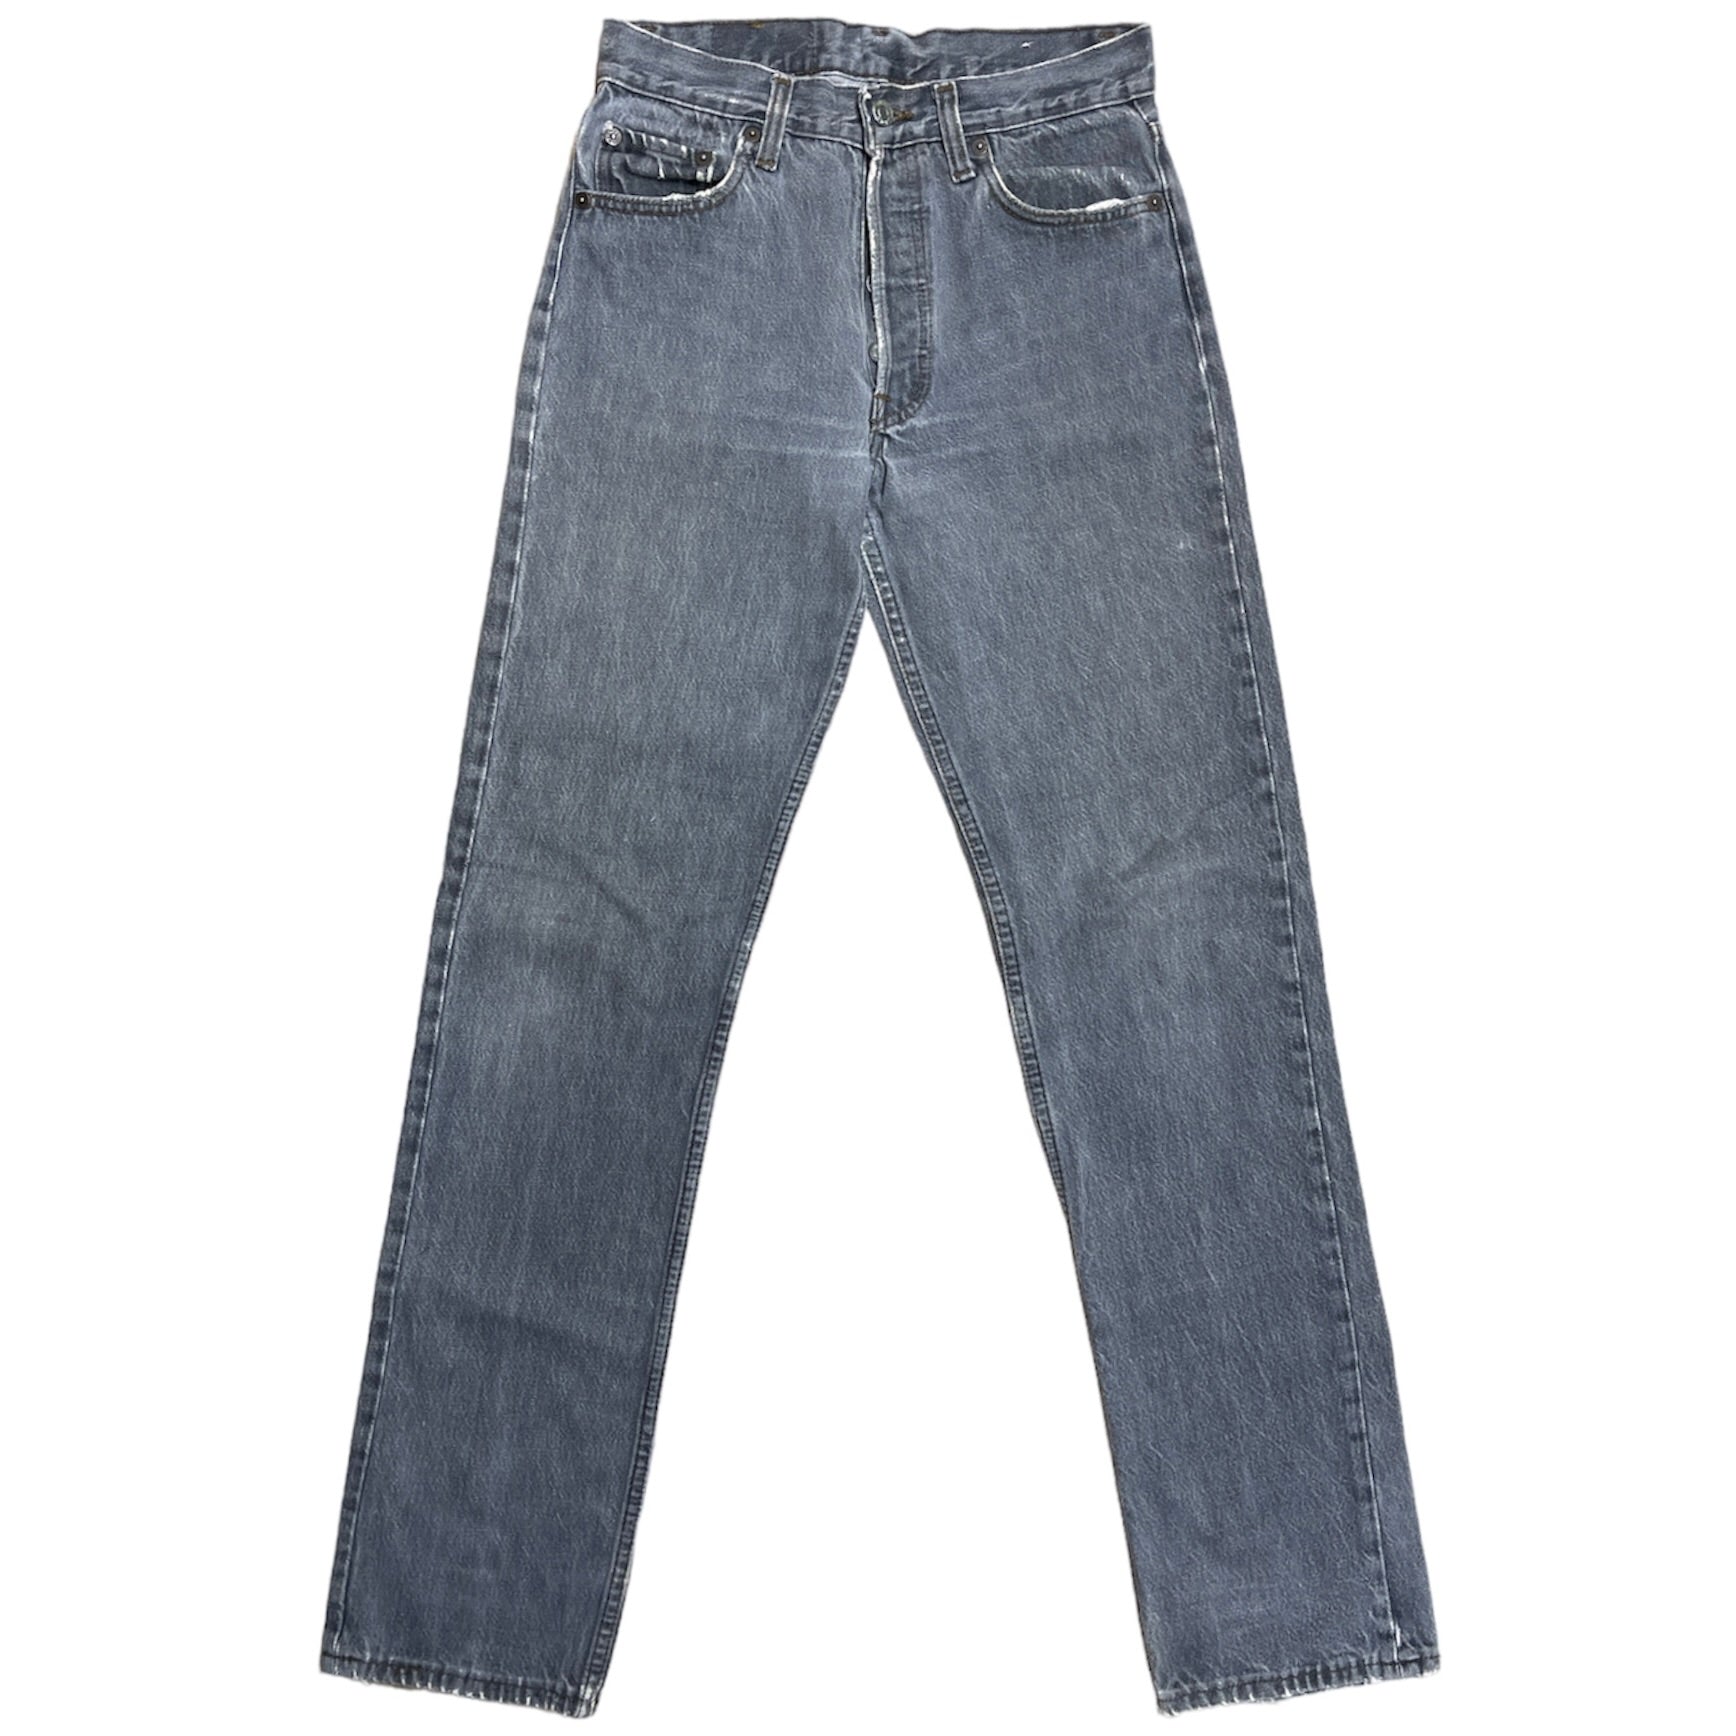 Vintage Levis 501 Grey Jeans (W28/L34)